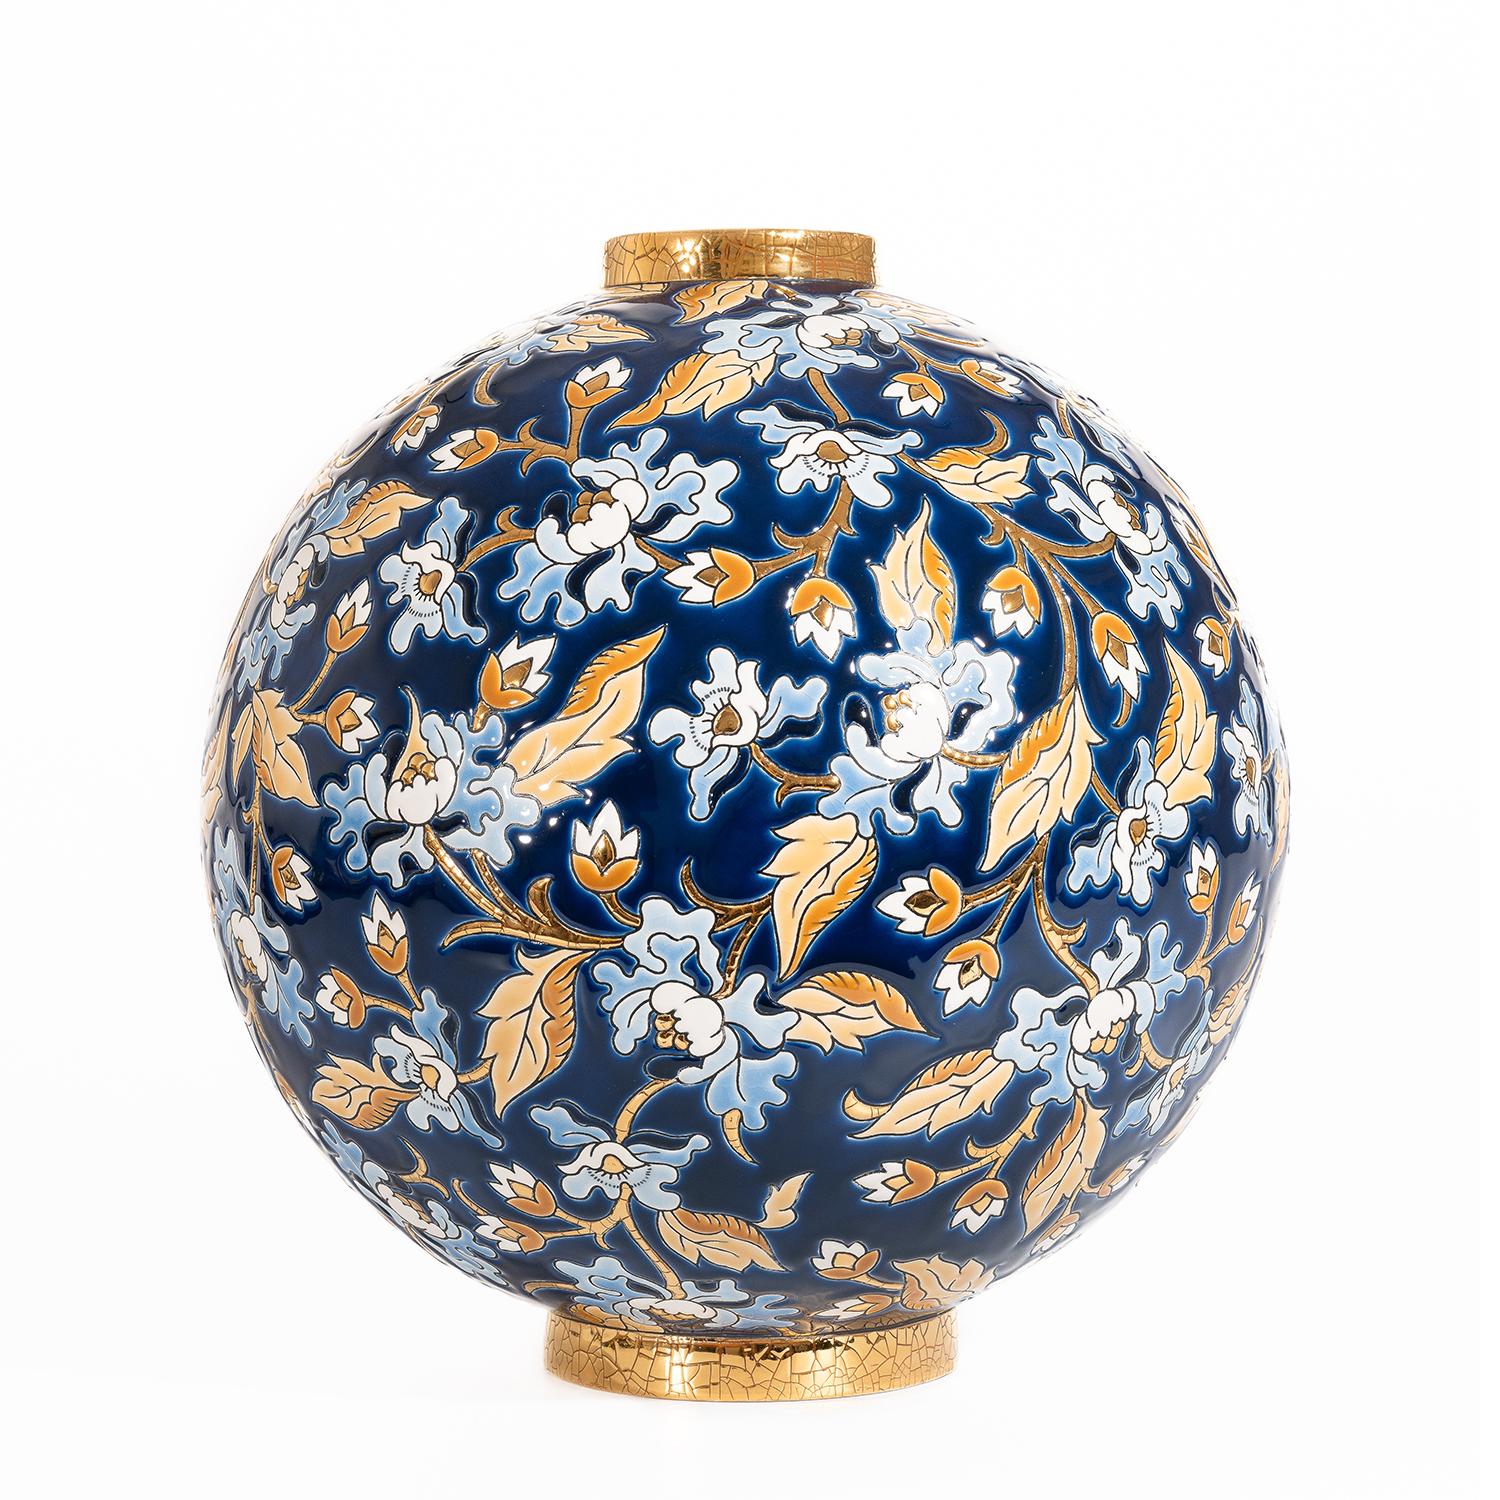 Vase Weiß und Blau Blumen alle in emailliertem Steingut,
Emaux de Longwy, hergestellt in Frankreich, mit 24 Karat vergoldet.